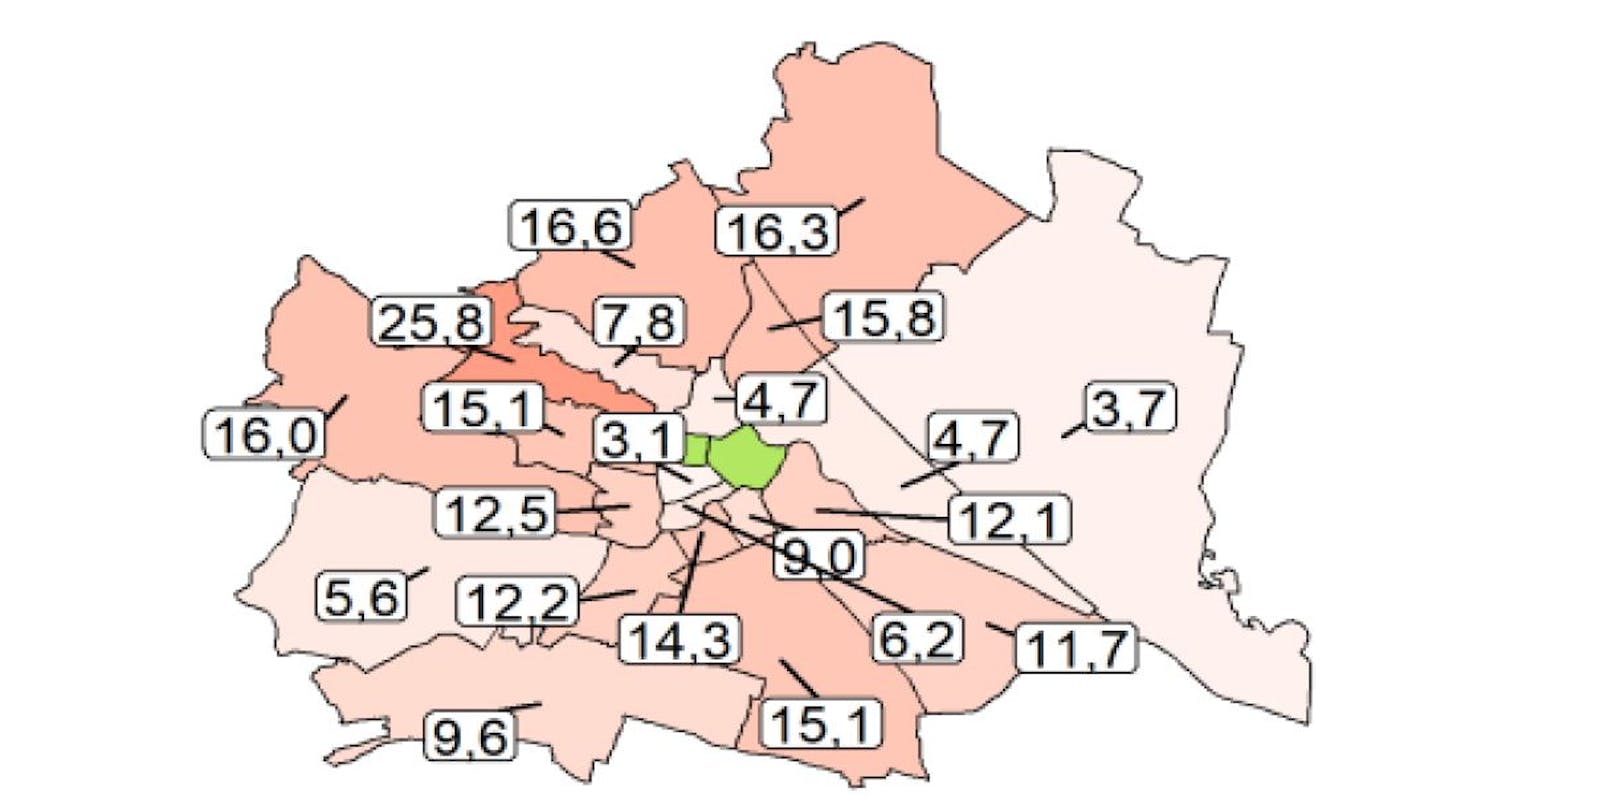 Die meisten Corona-Neuerkrankungen gab es in den letzten 7 Tagen in Wien-Hernals (25,8 Fälle je 100.000 Einwohner), die wenigsten in Wien-Neubau (3,1 Fälle).